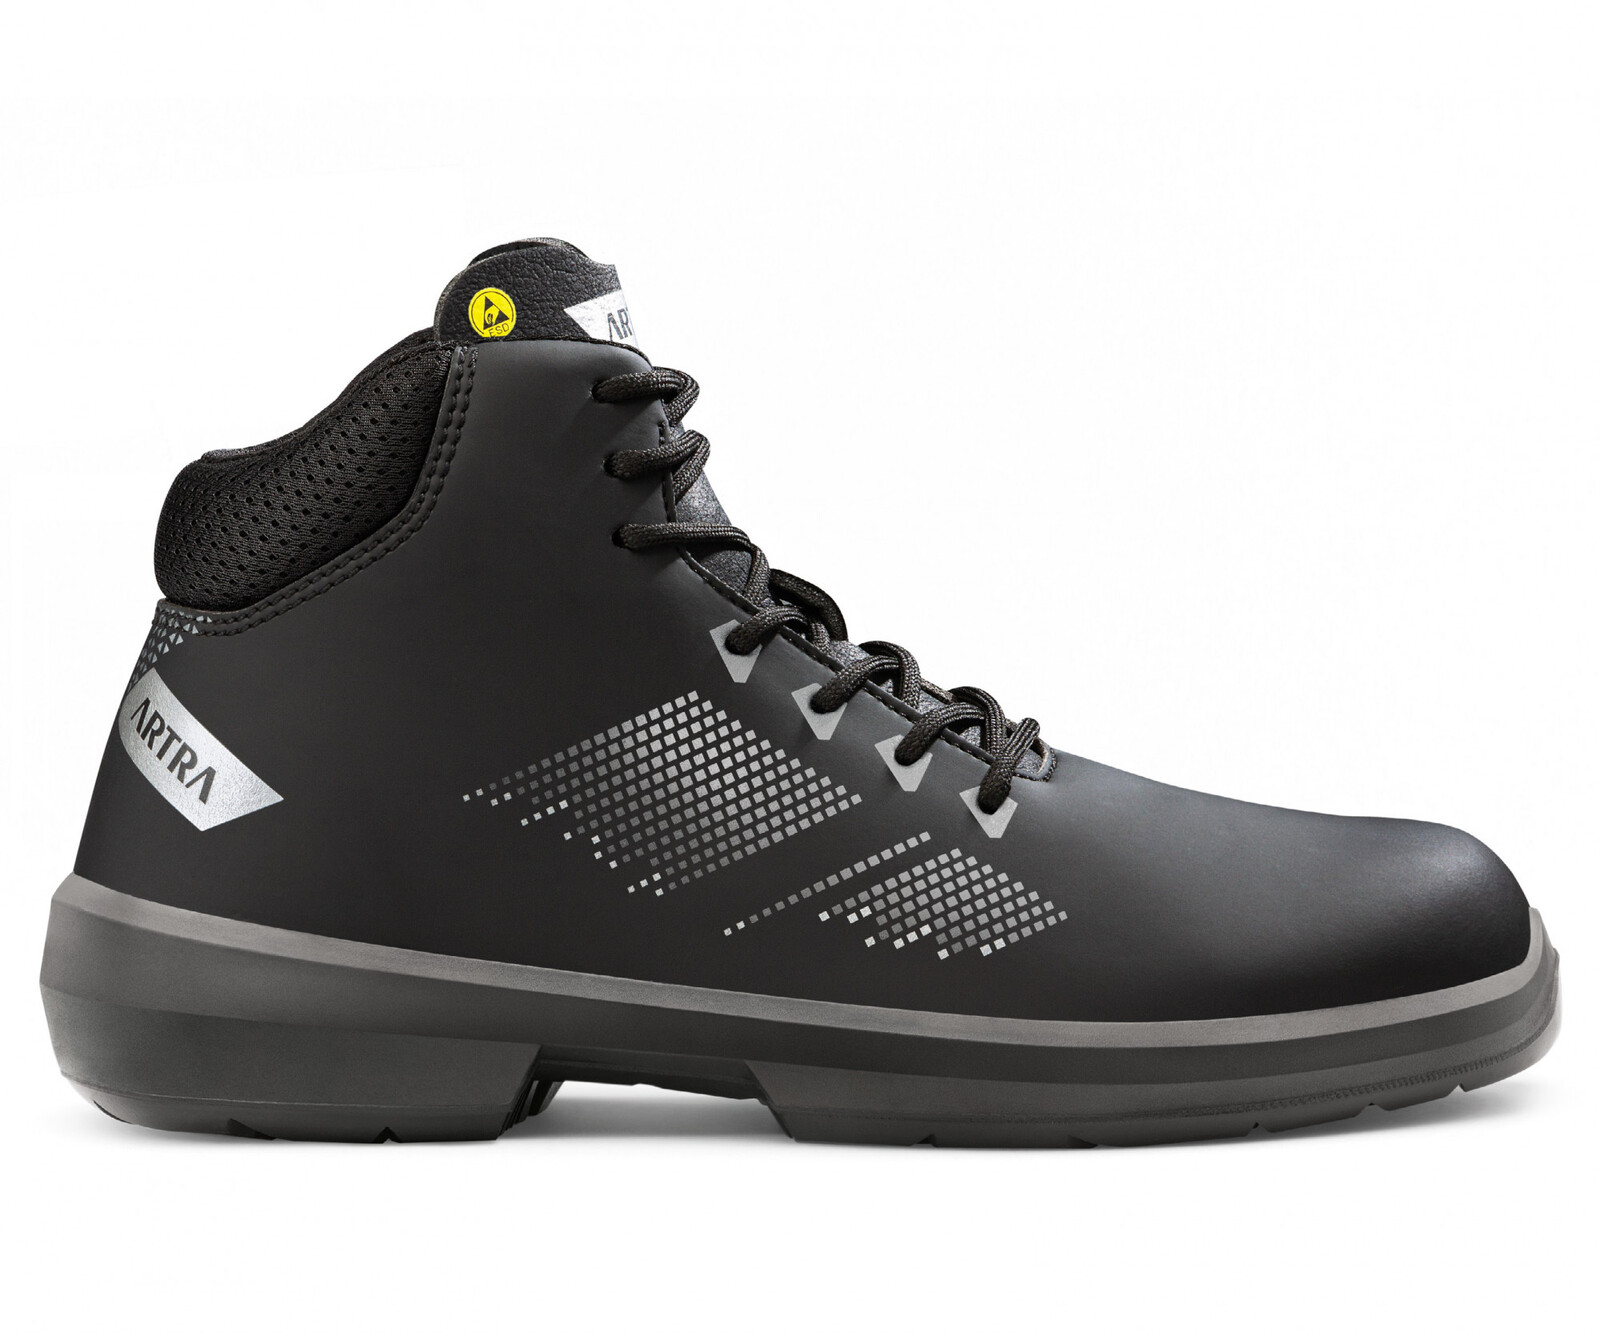 Bezpečnostná členková obuv Artra Arrival 855 676560 S3 SRC ESD MF - veľkosť: 41, farba: čierna/sivá